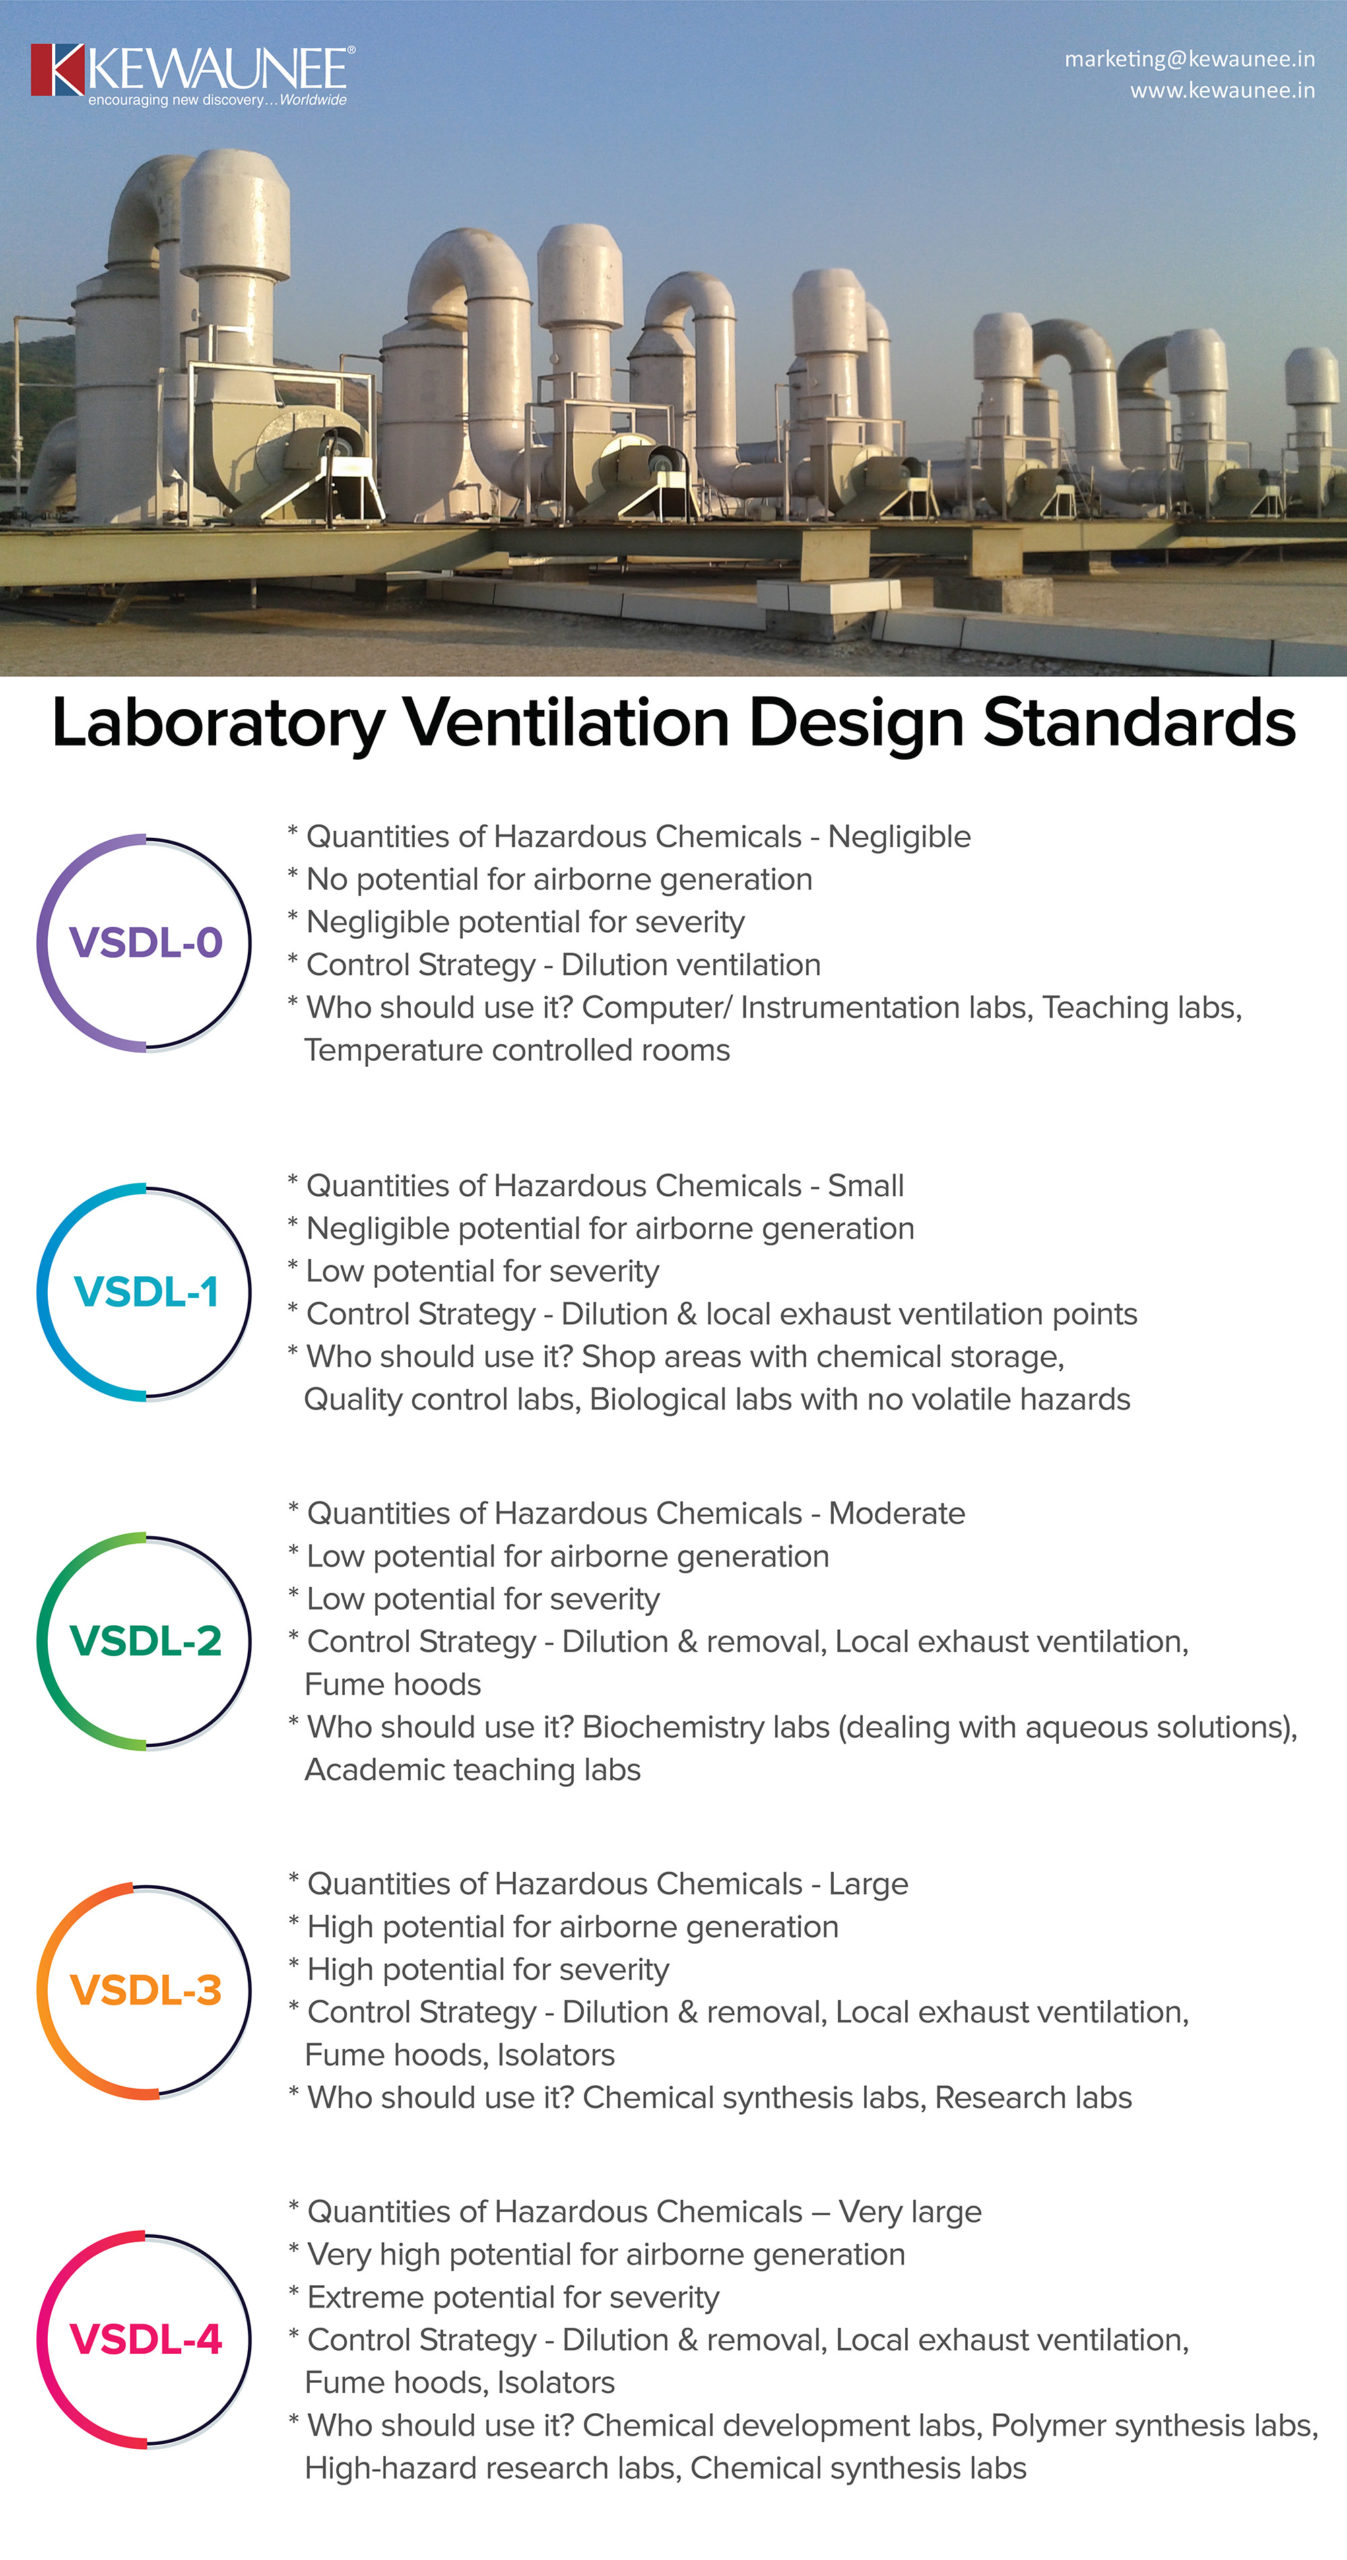 Lab ventilation design standards